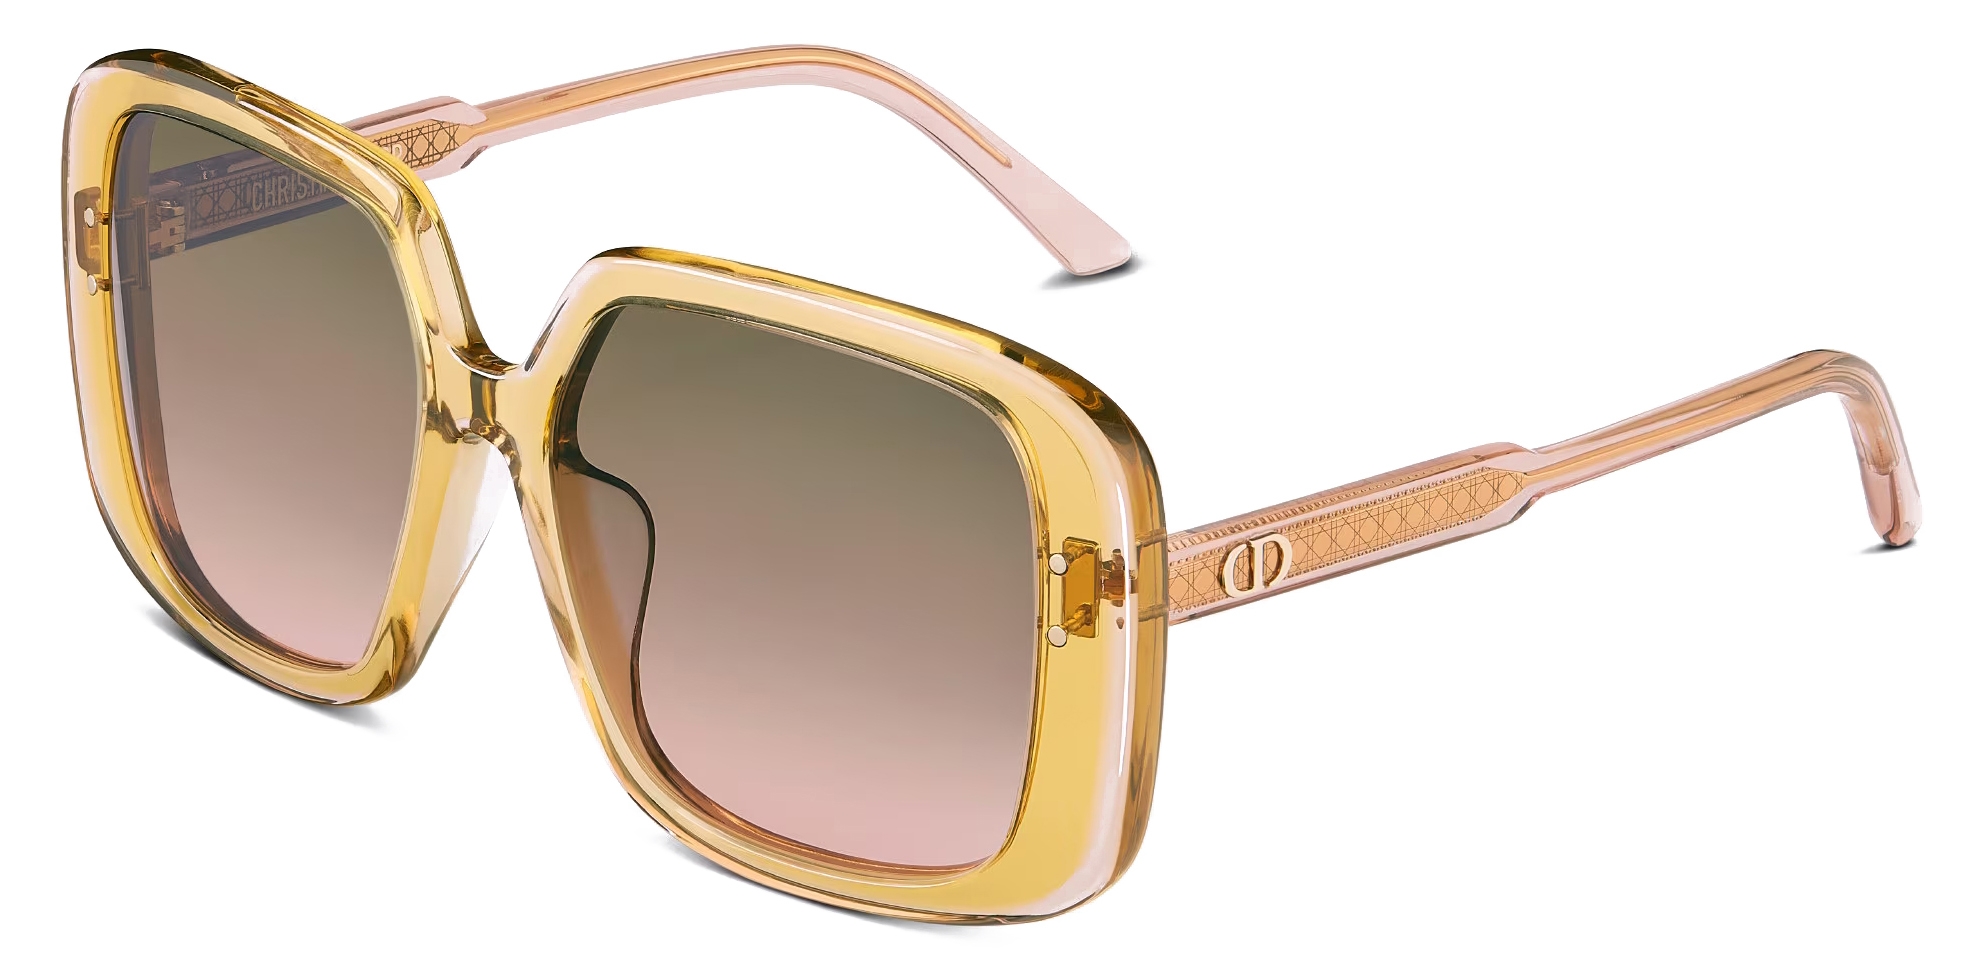 DiorSignature S10F Transparent Blue Square Sunglasses